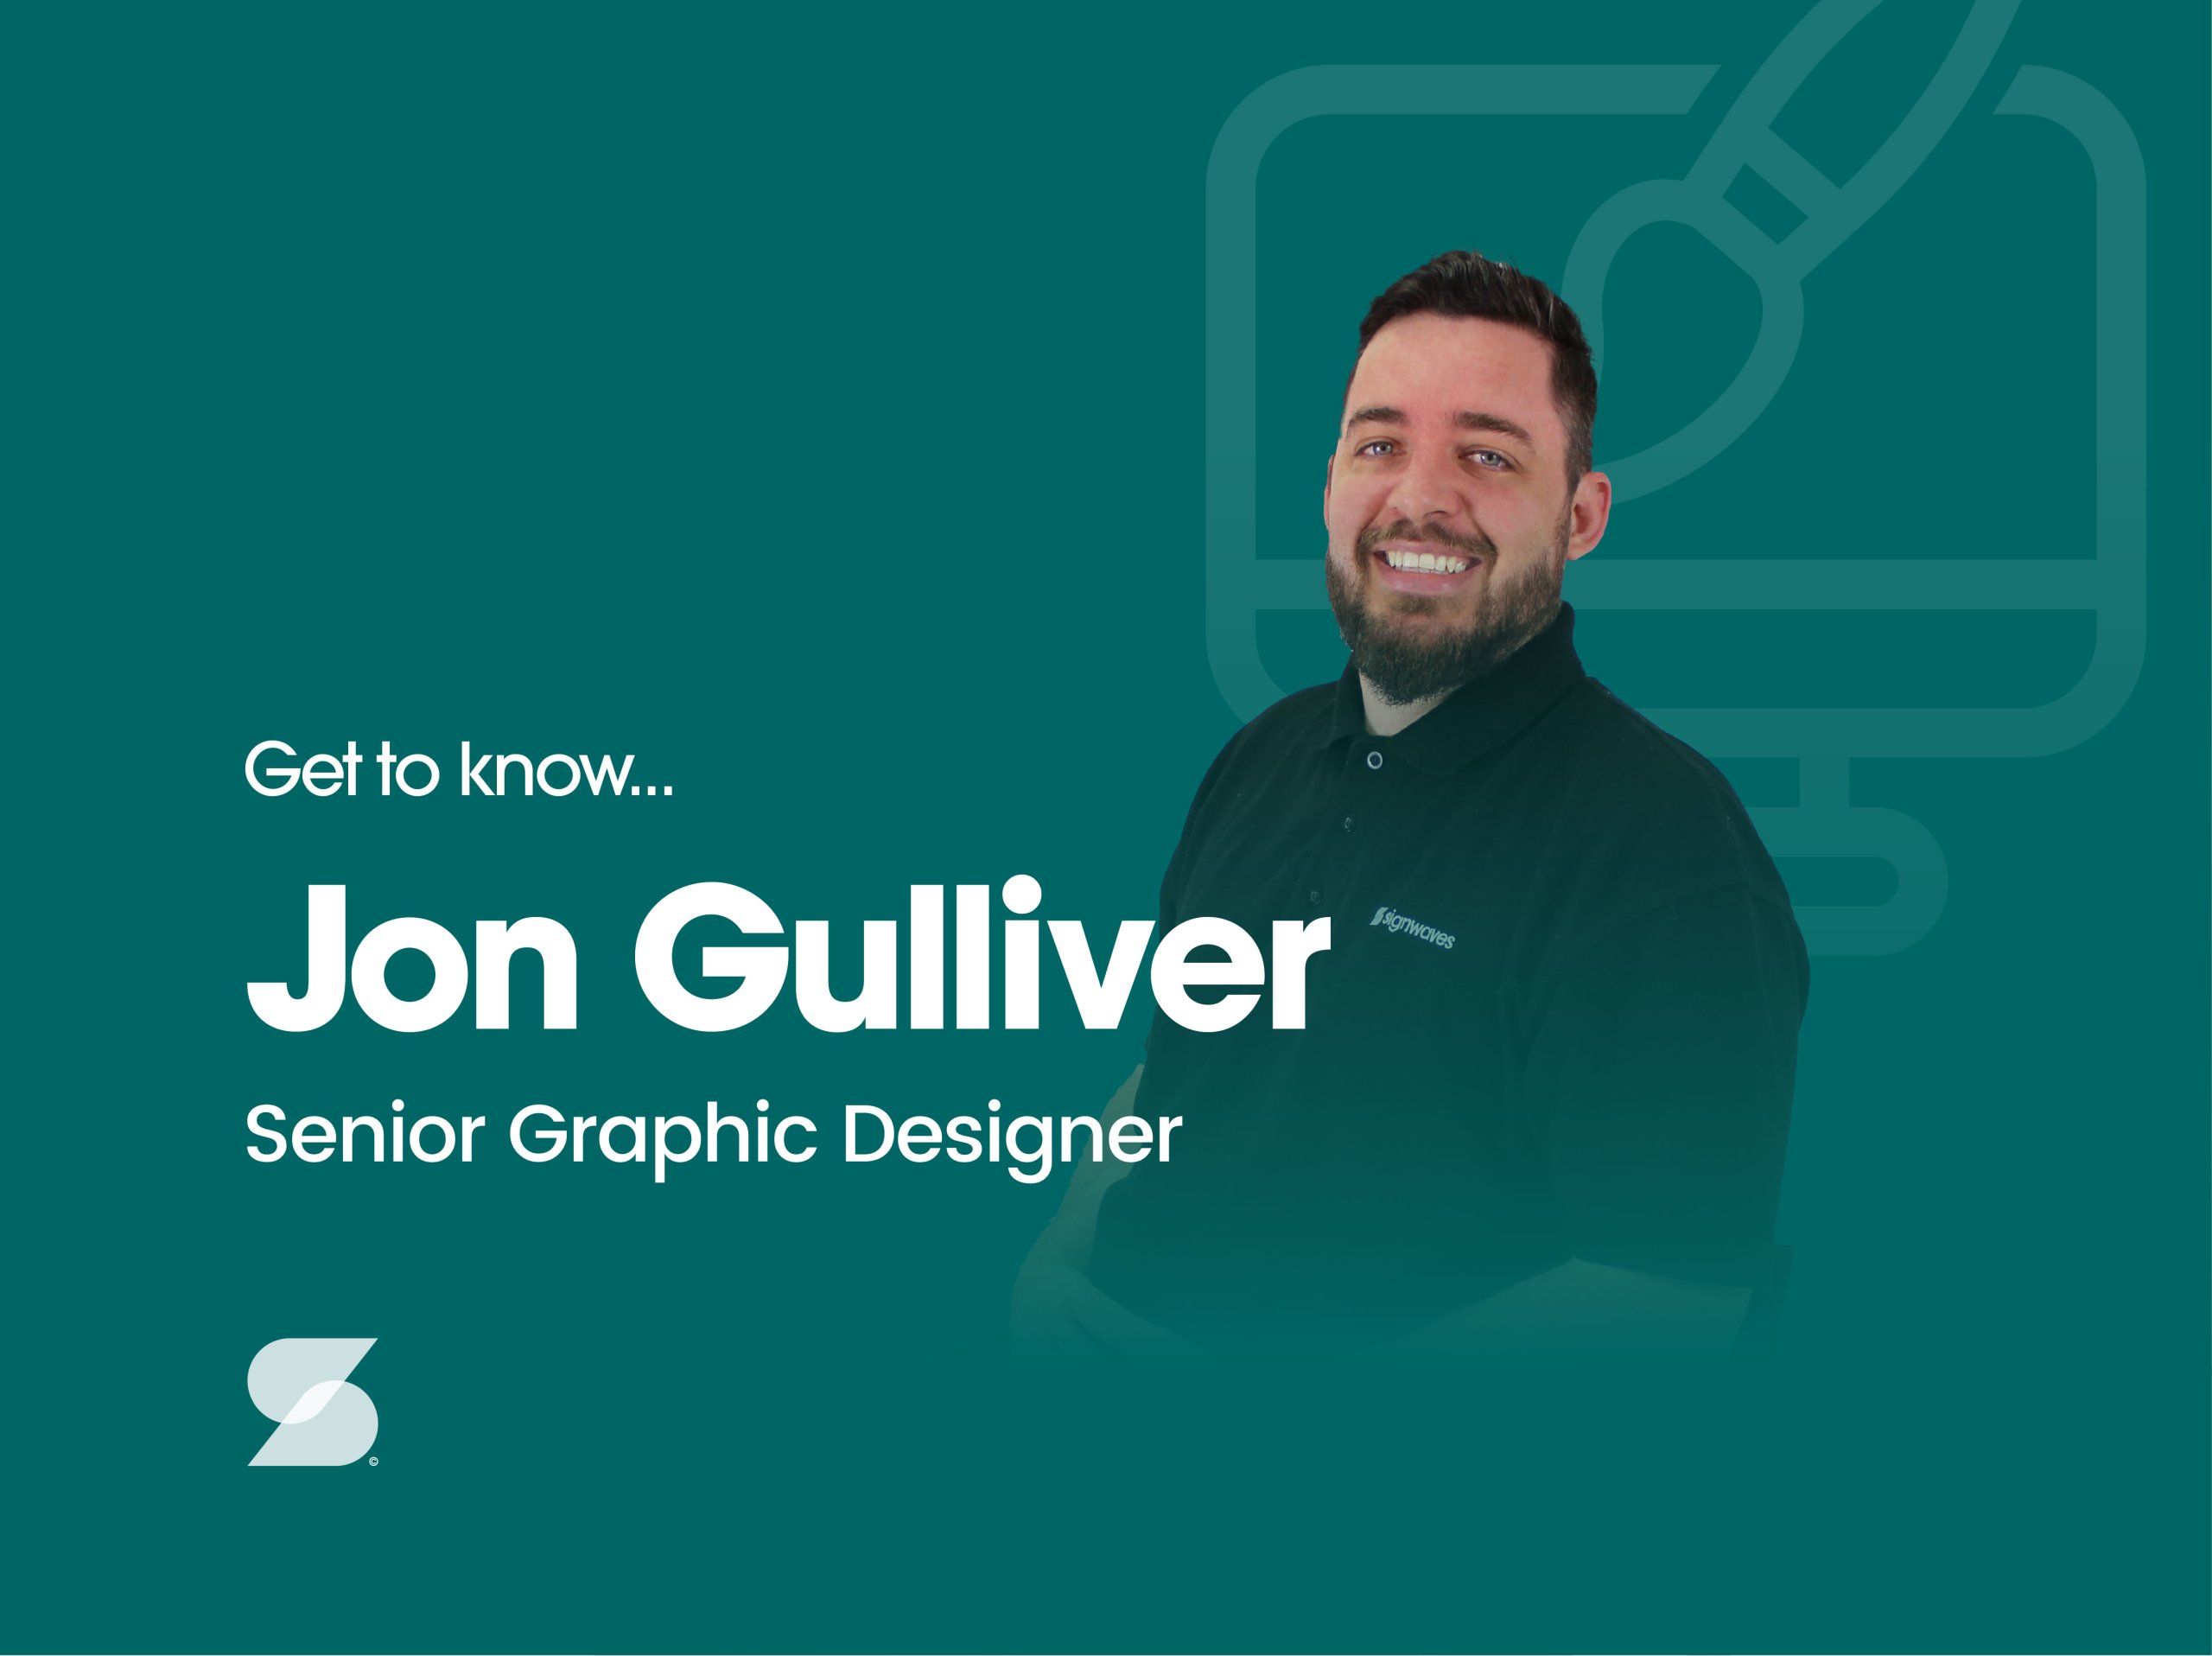 Get to know - Jon Gulliver, our Senior Graphic Designer